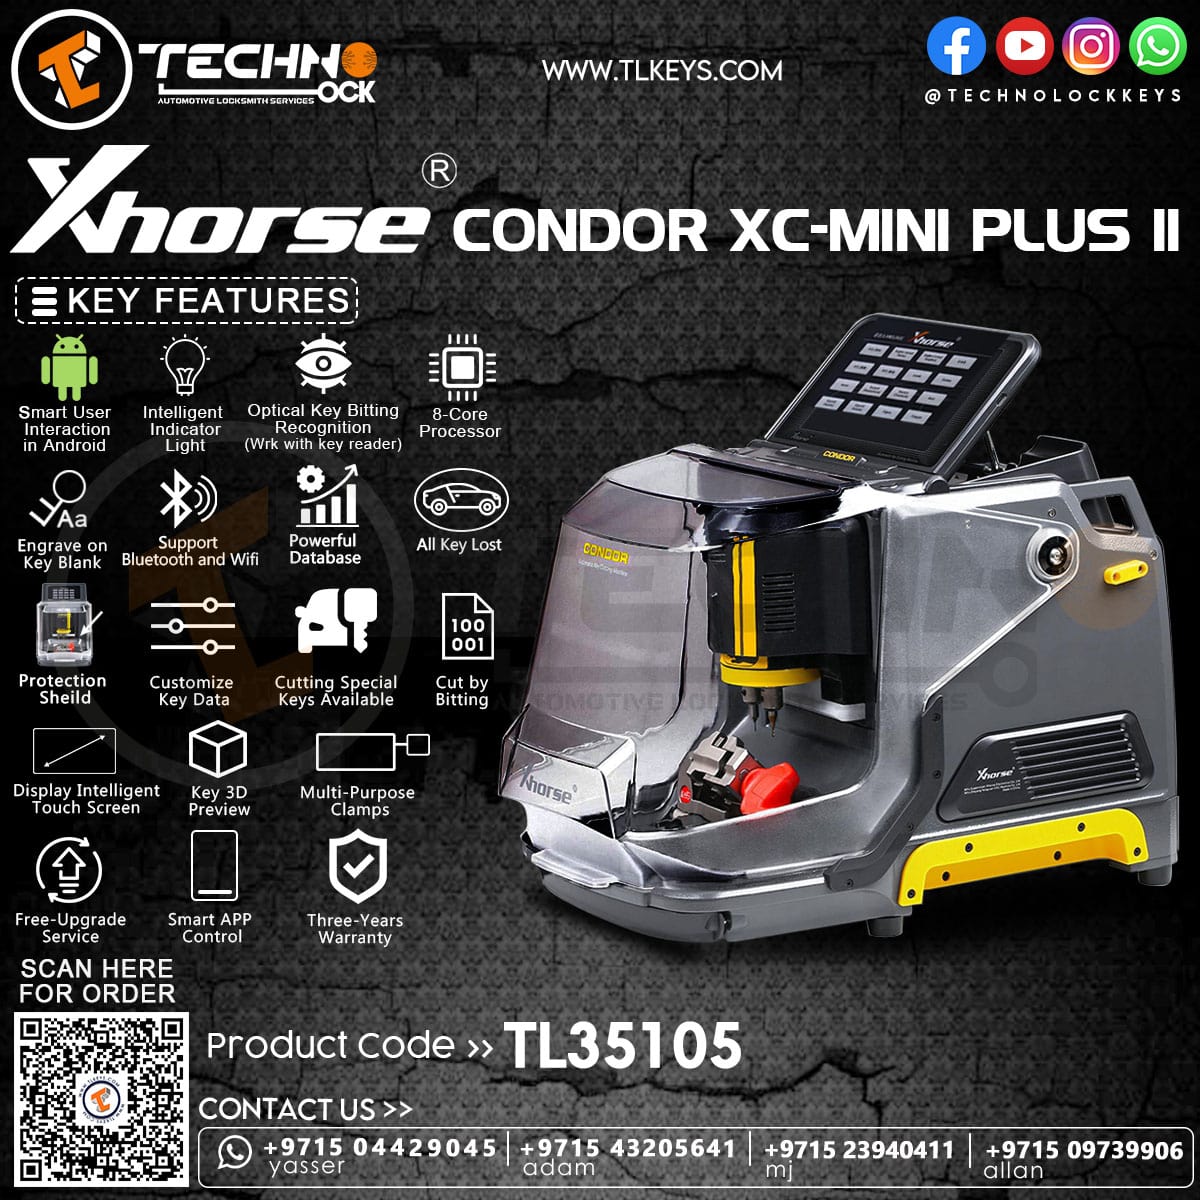 Condor Key Machine Plus 2 Features